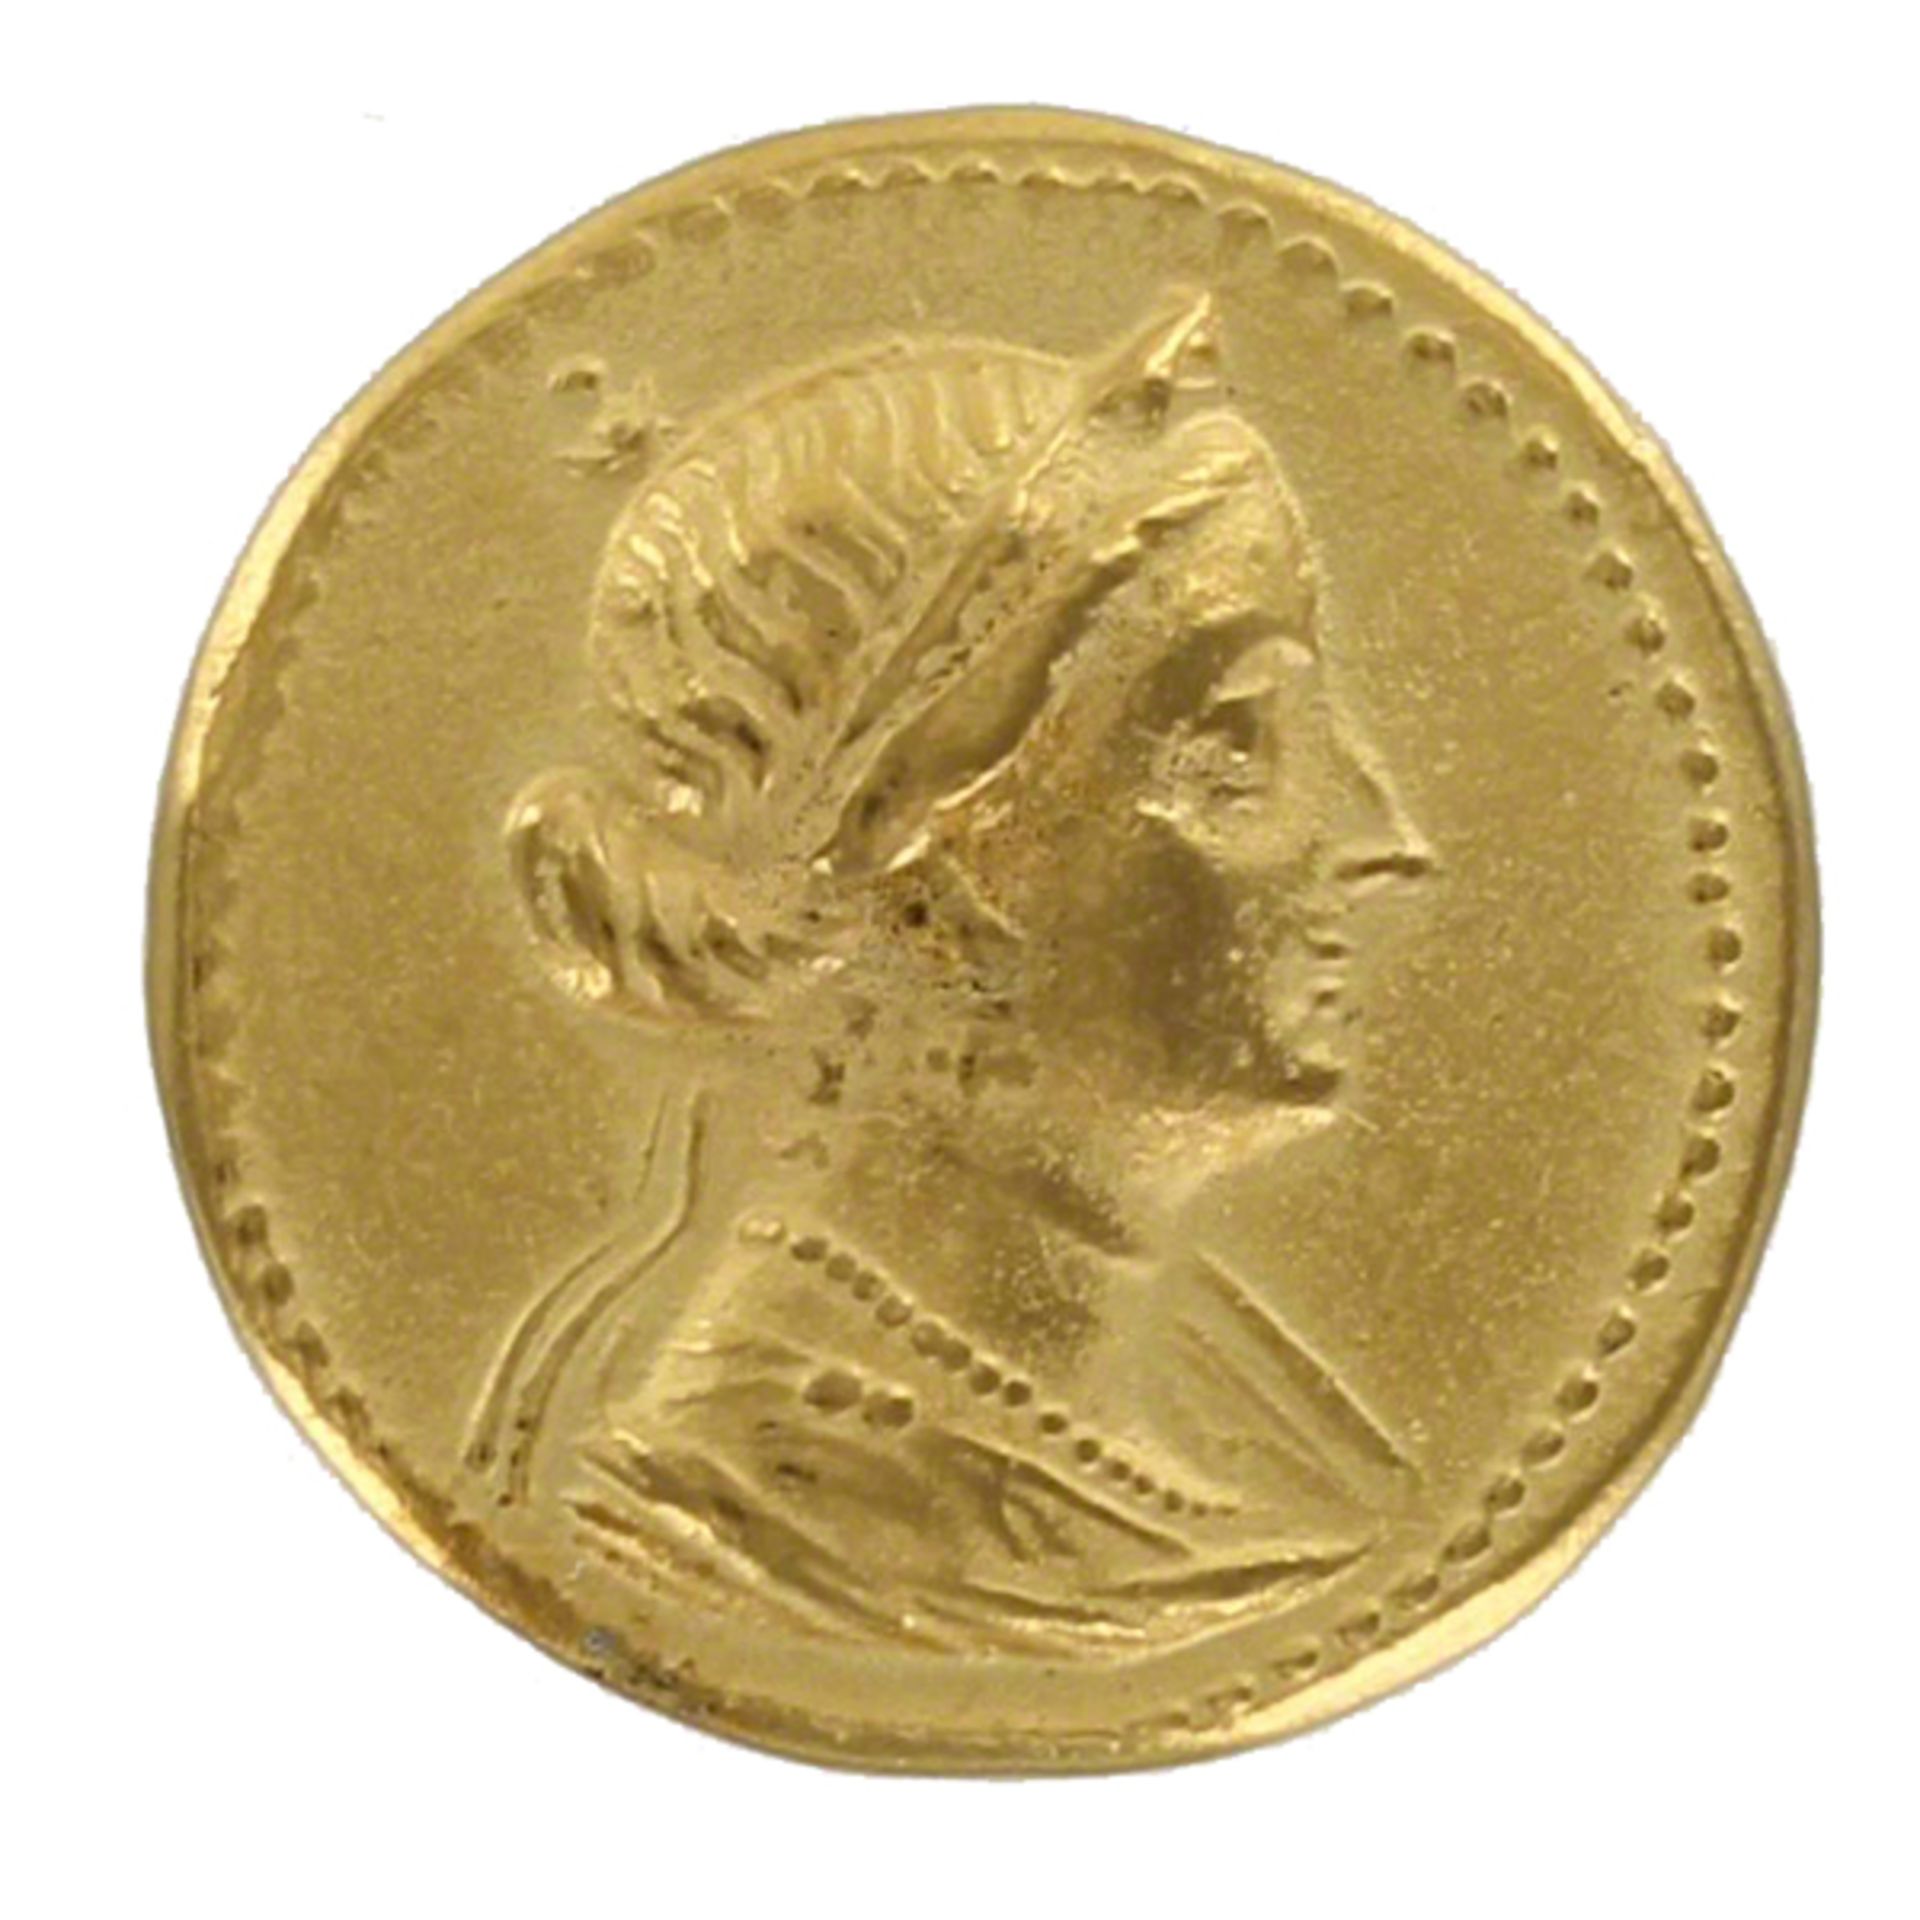 Arsinoe III Octadrachm 246 BC Coin